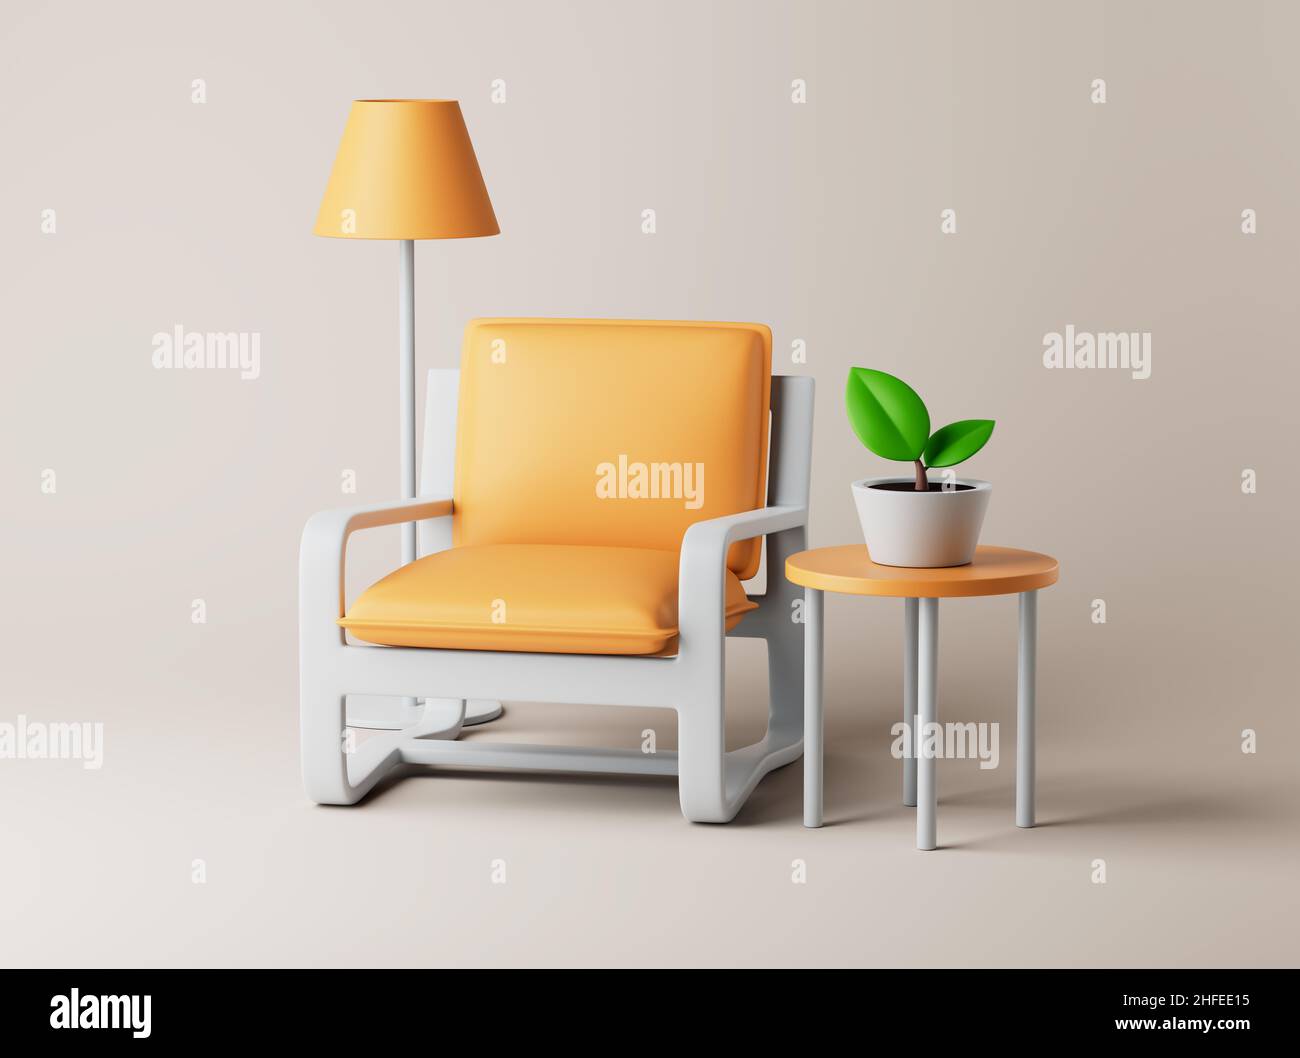 Intérieur avec fauteuil, lampadaire, petite table et plante sur le sol.Illustration simple du rendu 3D.Objets isolés sur fond pastel Banque D'Images